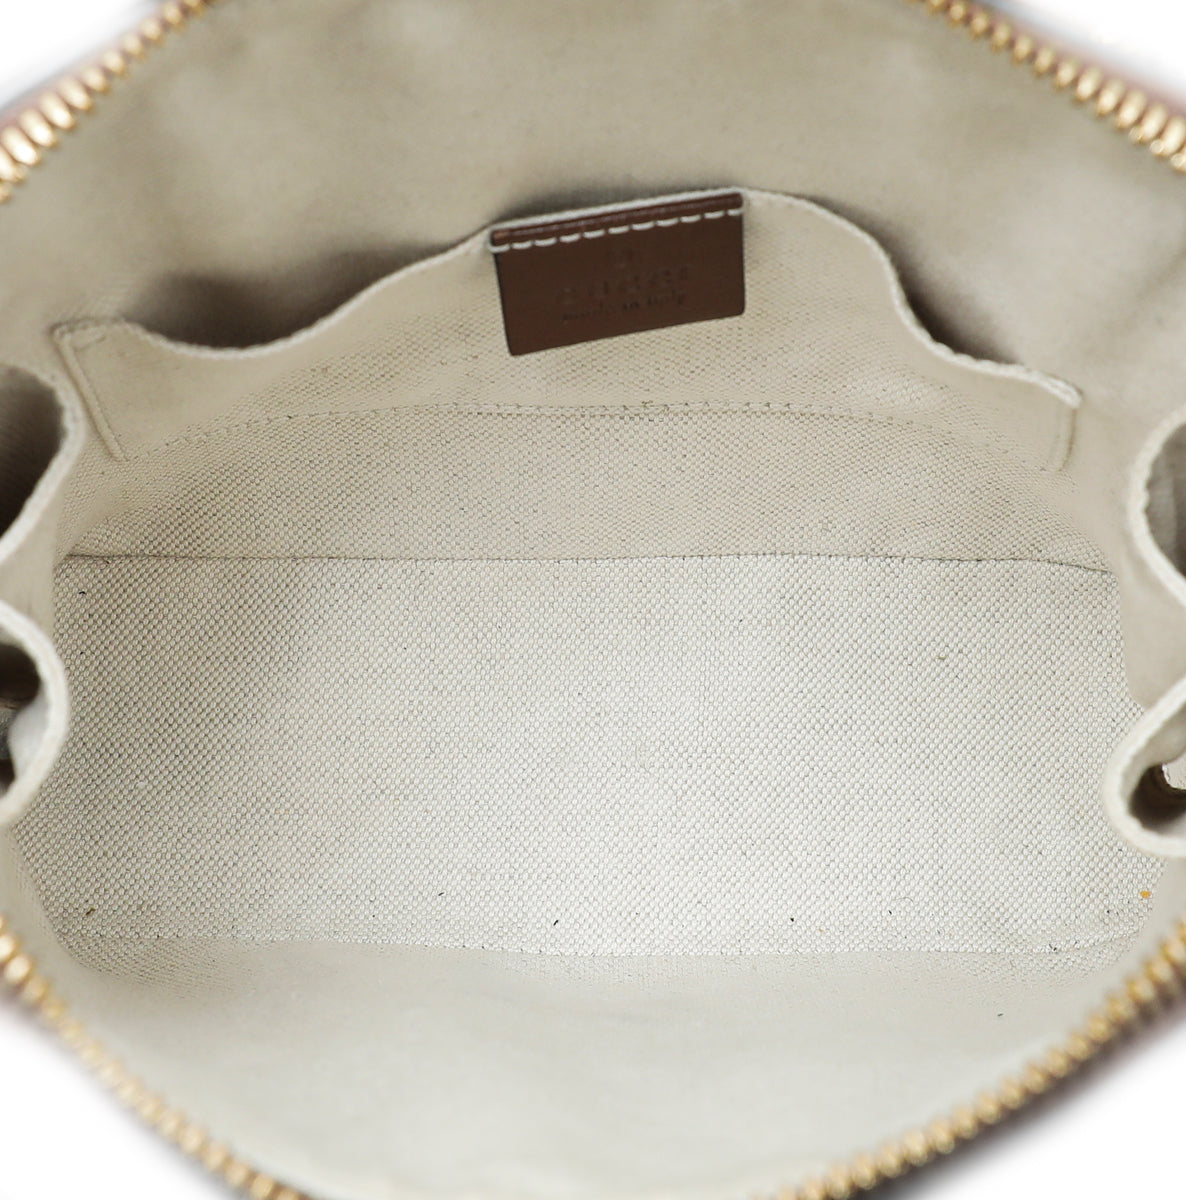 Gucci Bicolor Horsebit 1955 Mini Top Handle Bag